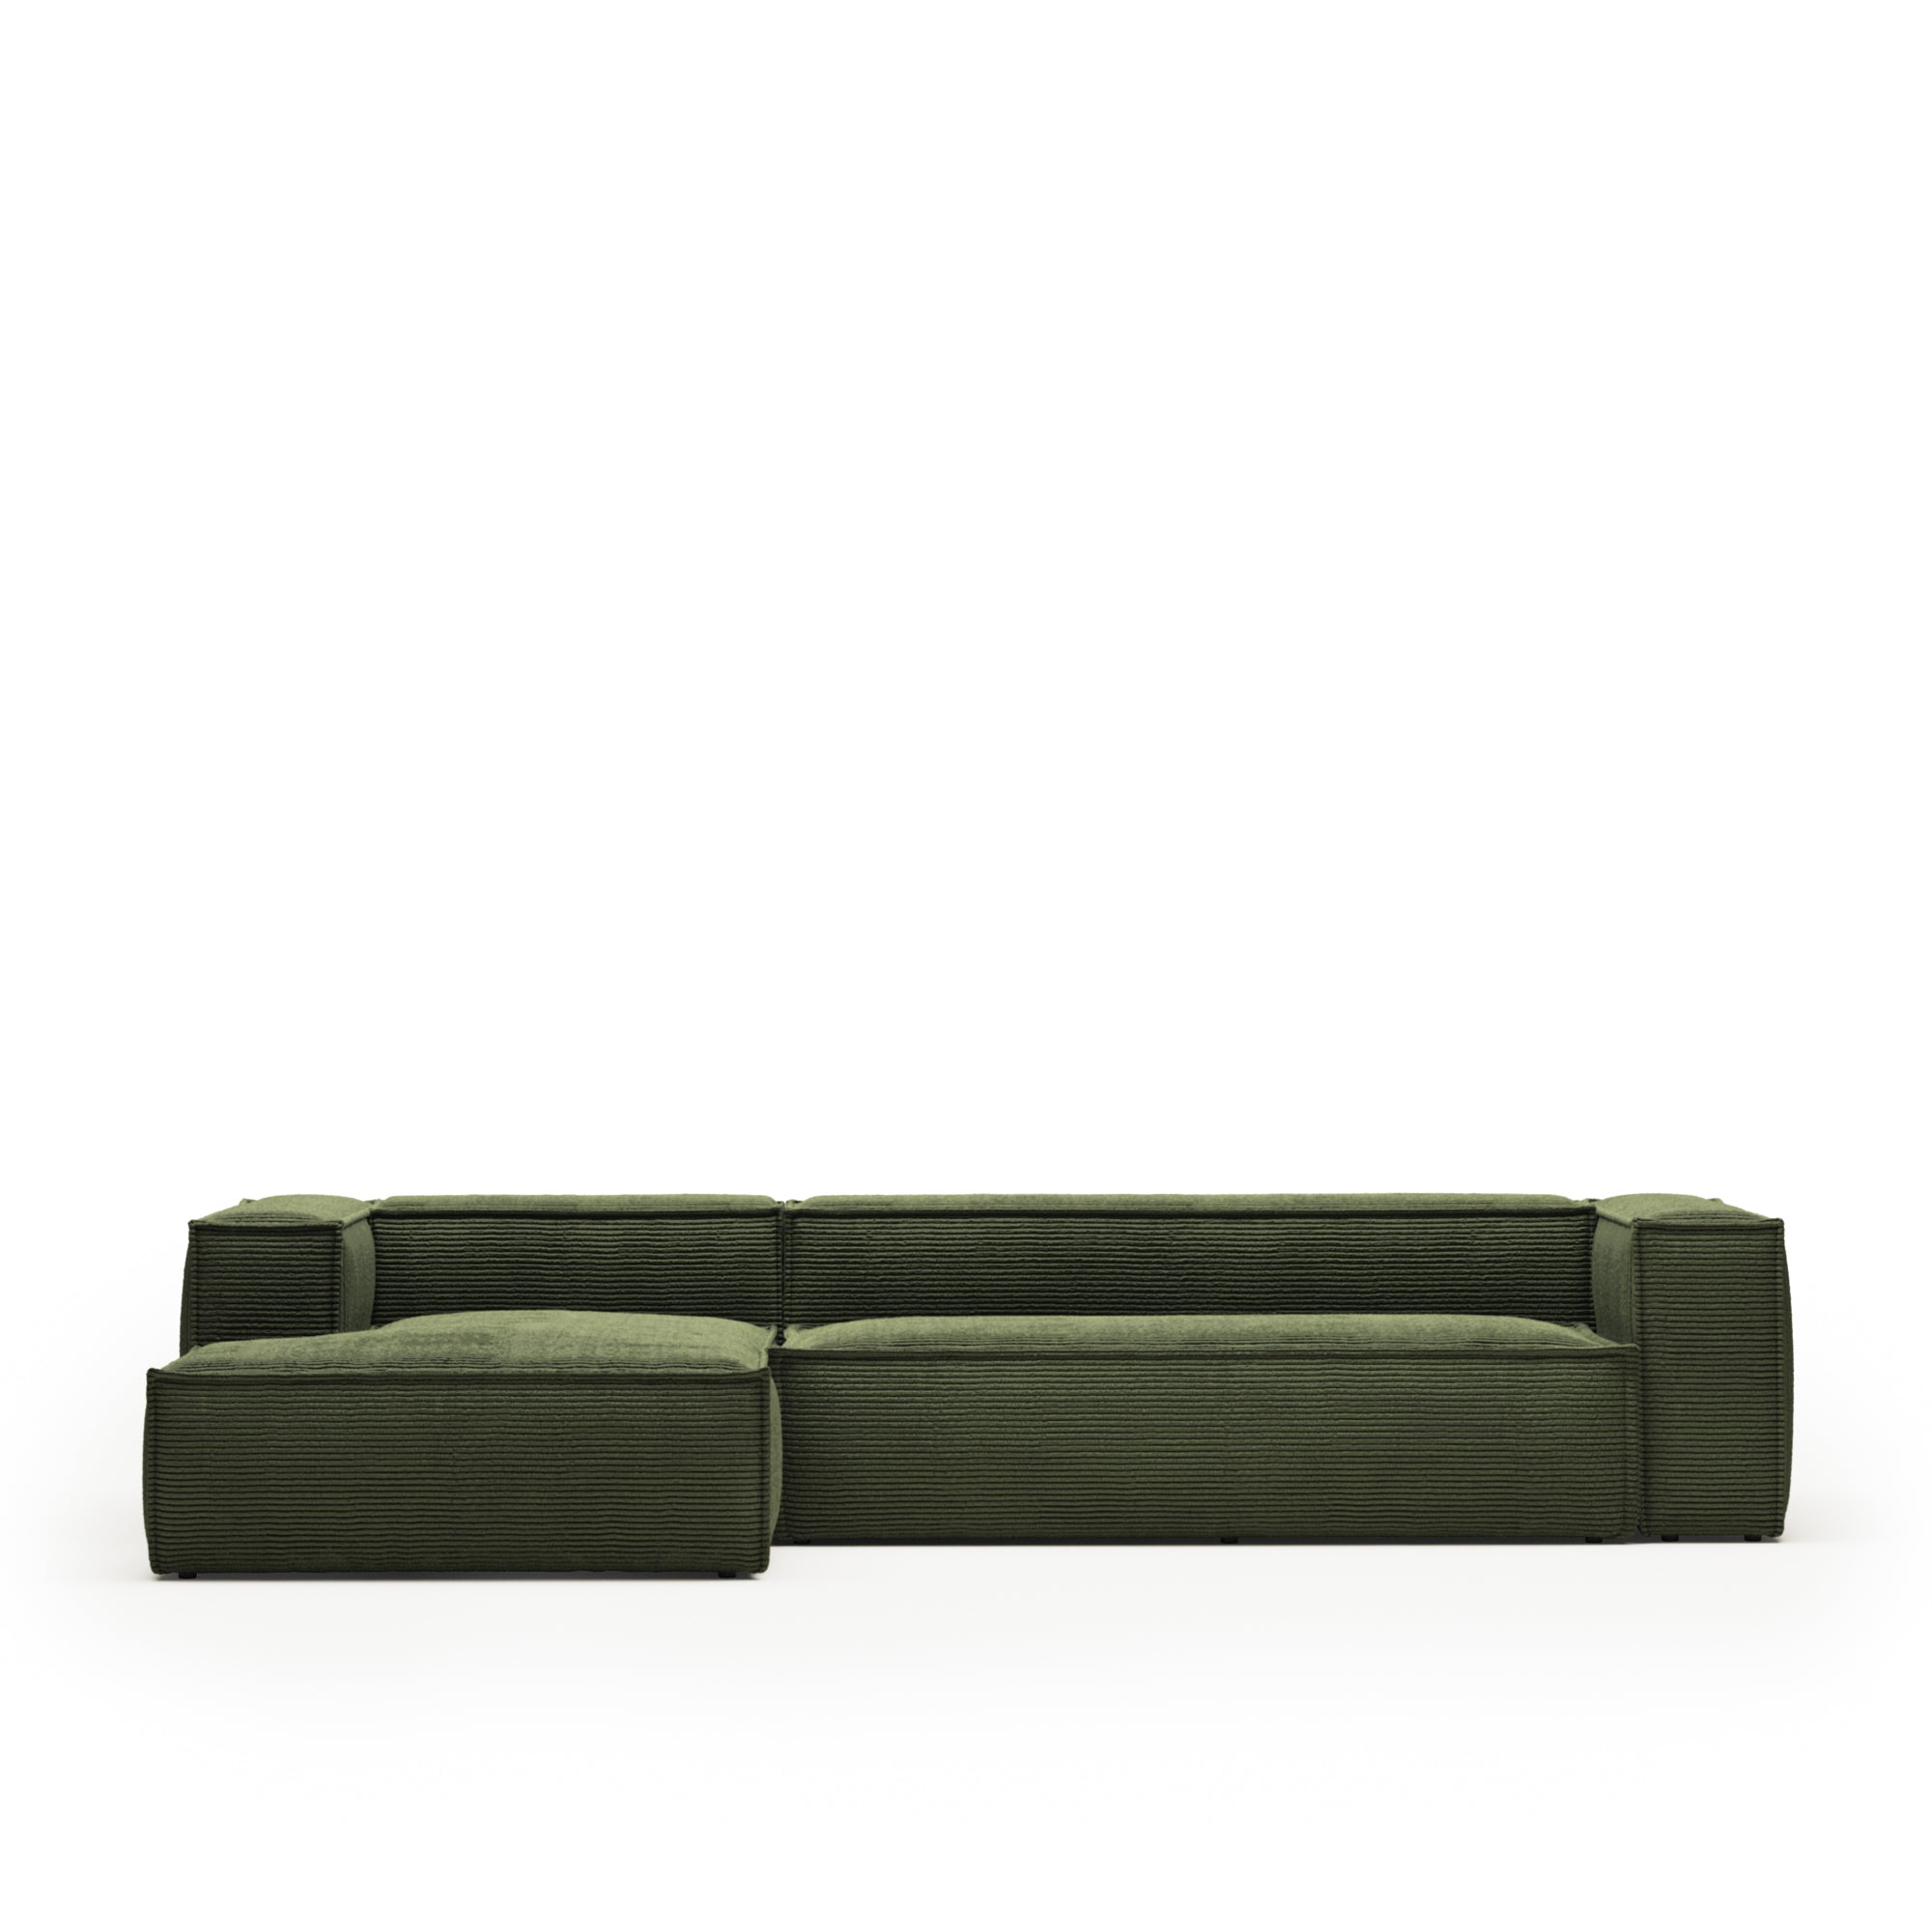 Blok 4 személyes kanapé bal oldali fekvőfotellel, zöld széles varrású kordbársonyból, 330 cm